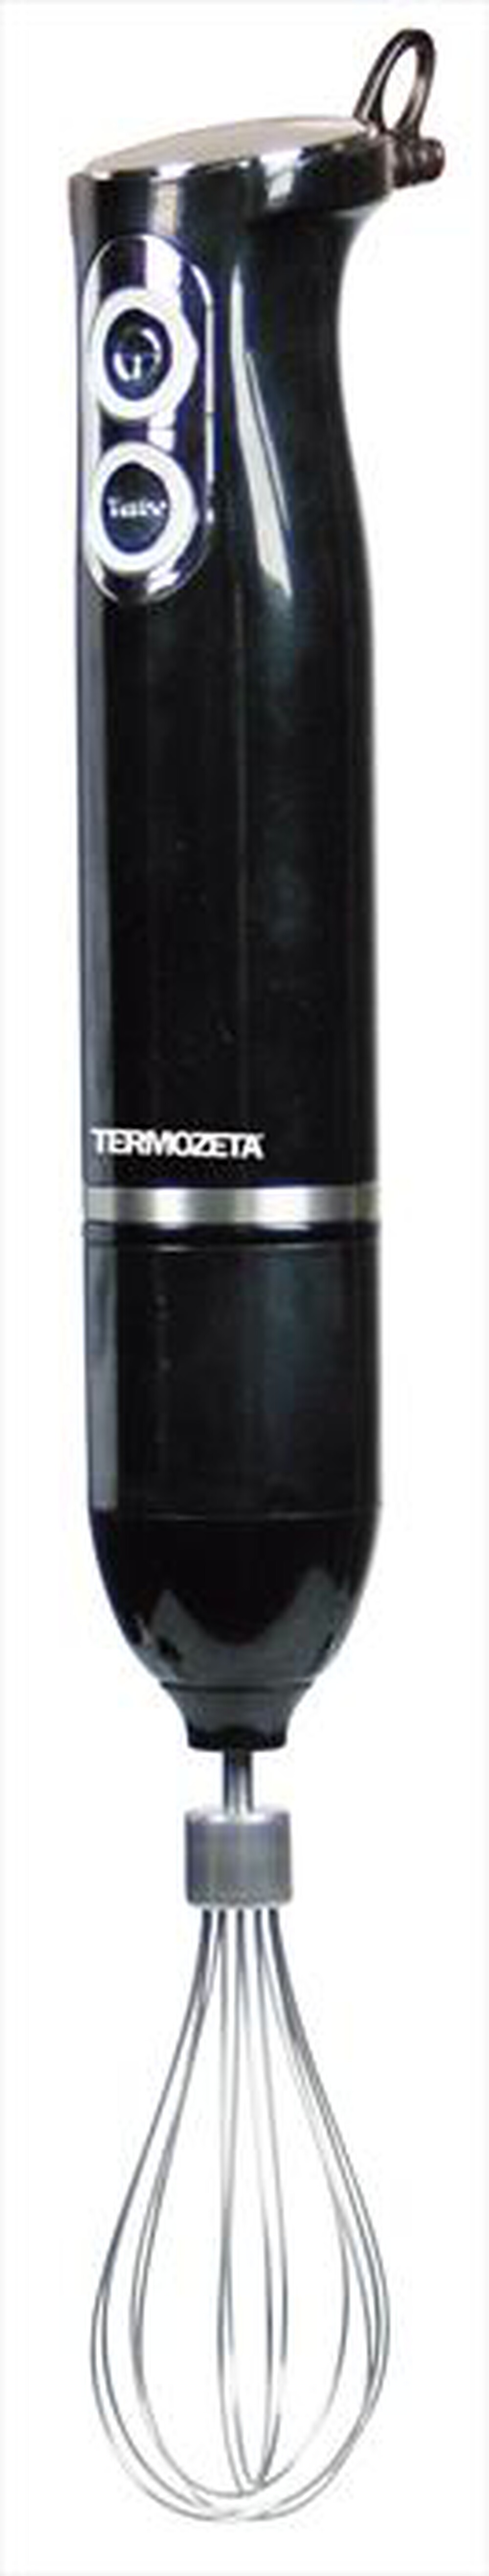 "TERMOZETA - 76020-nero"